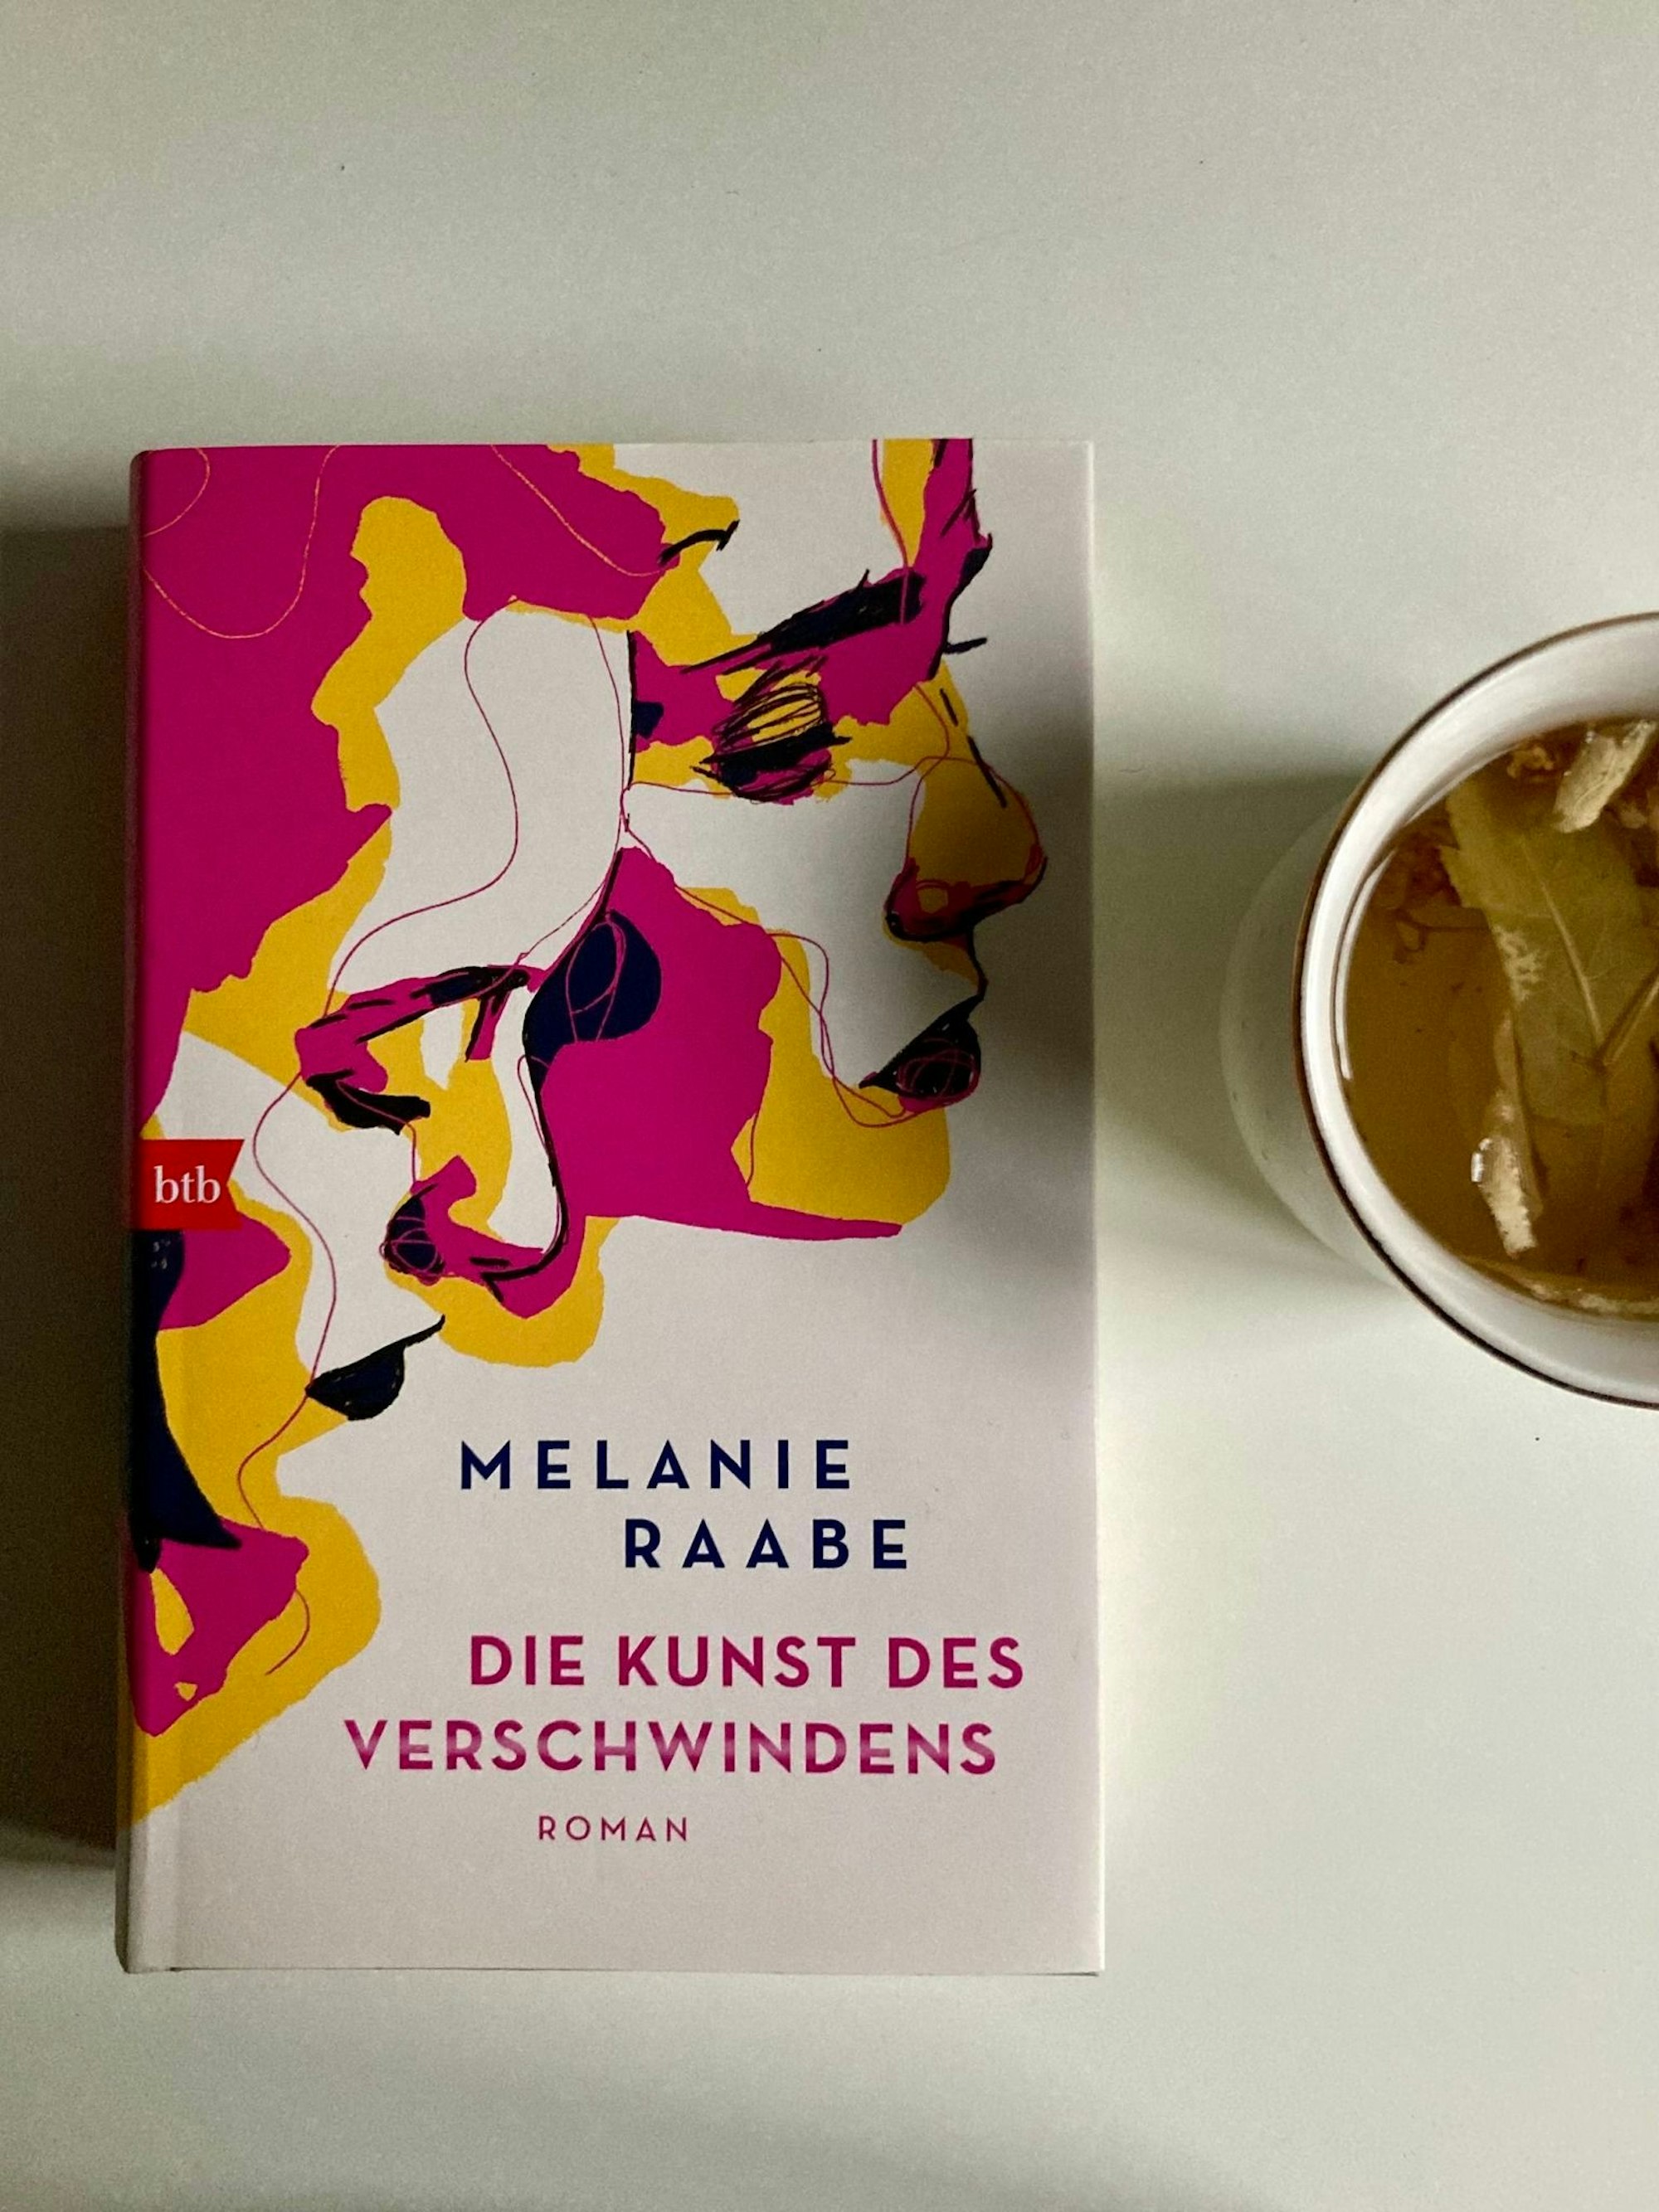 "Die Kunst des Verschwindens" von Melanie Raabe als Buch.